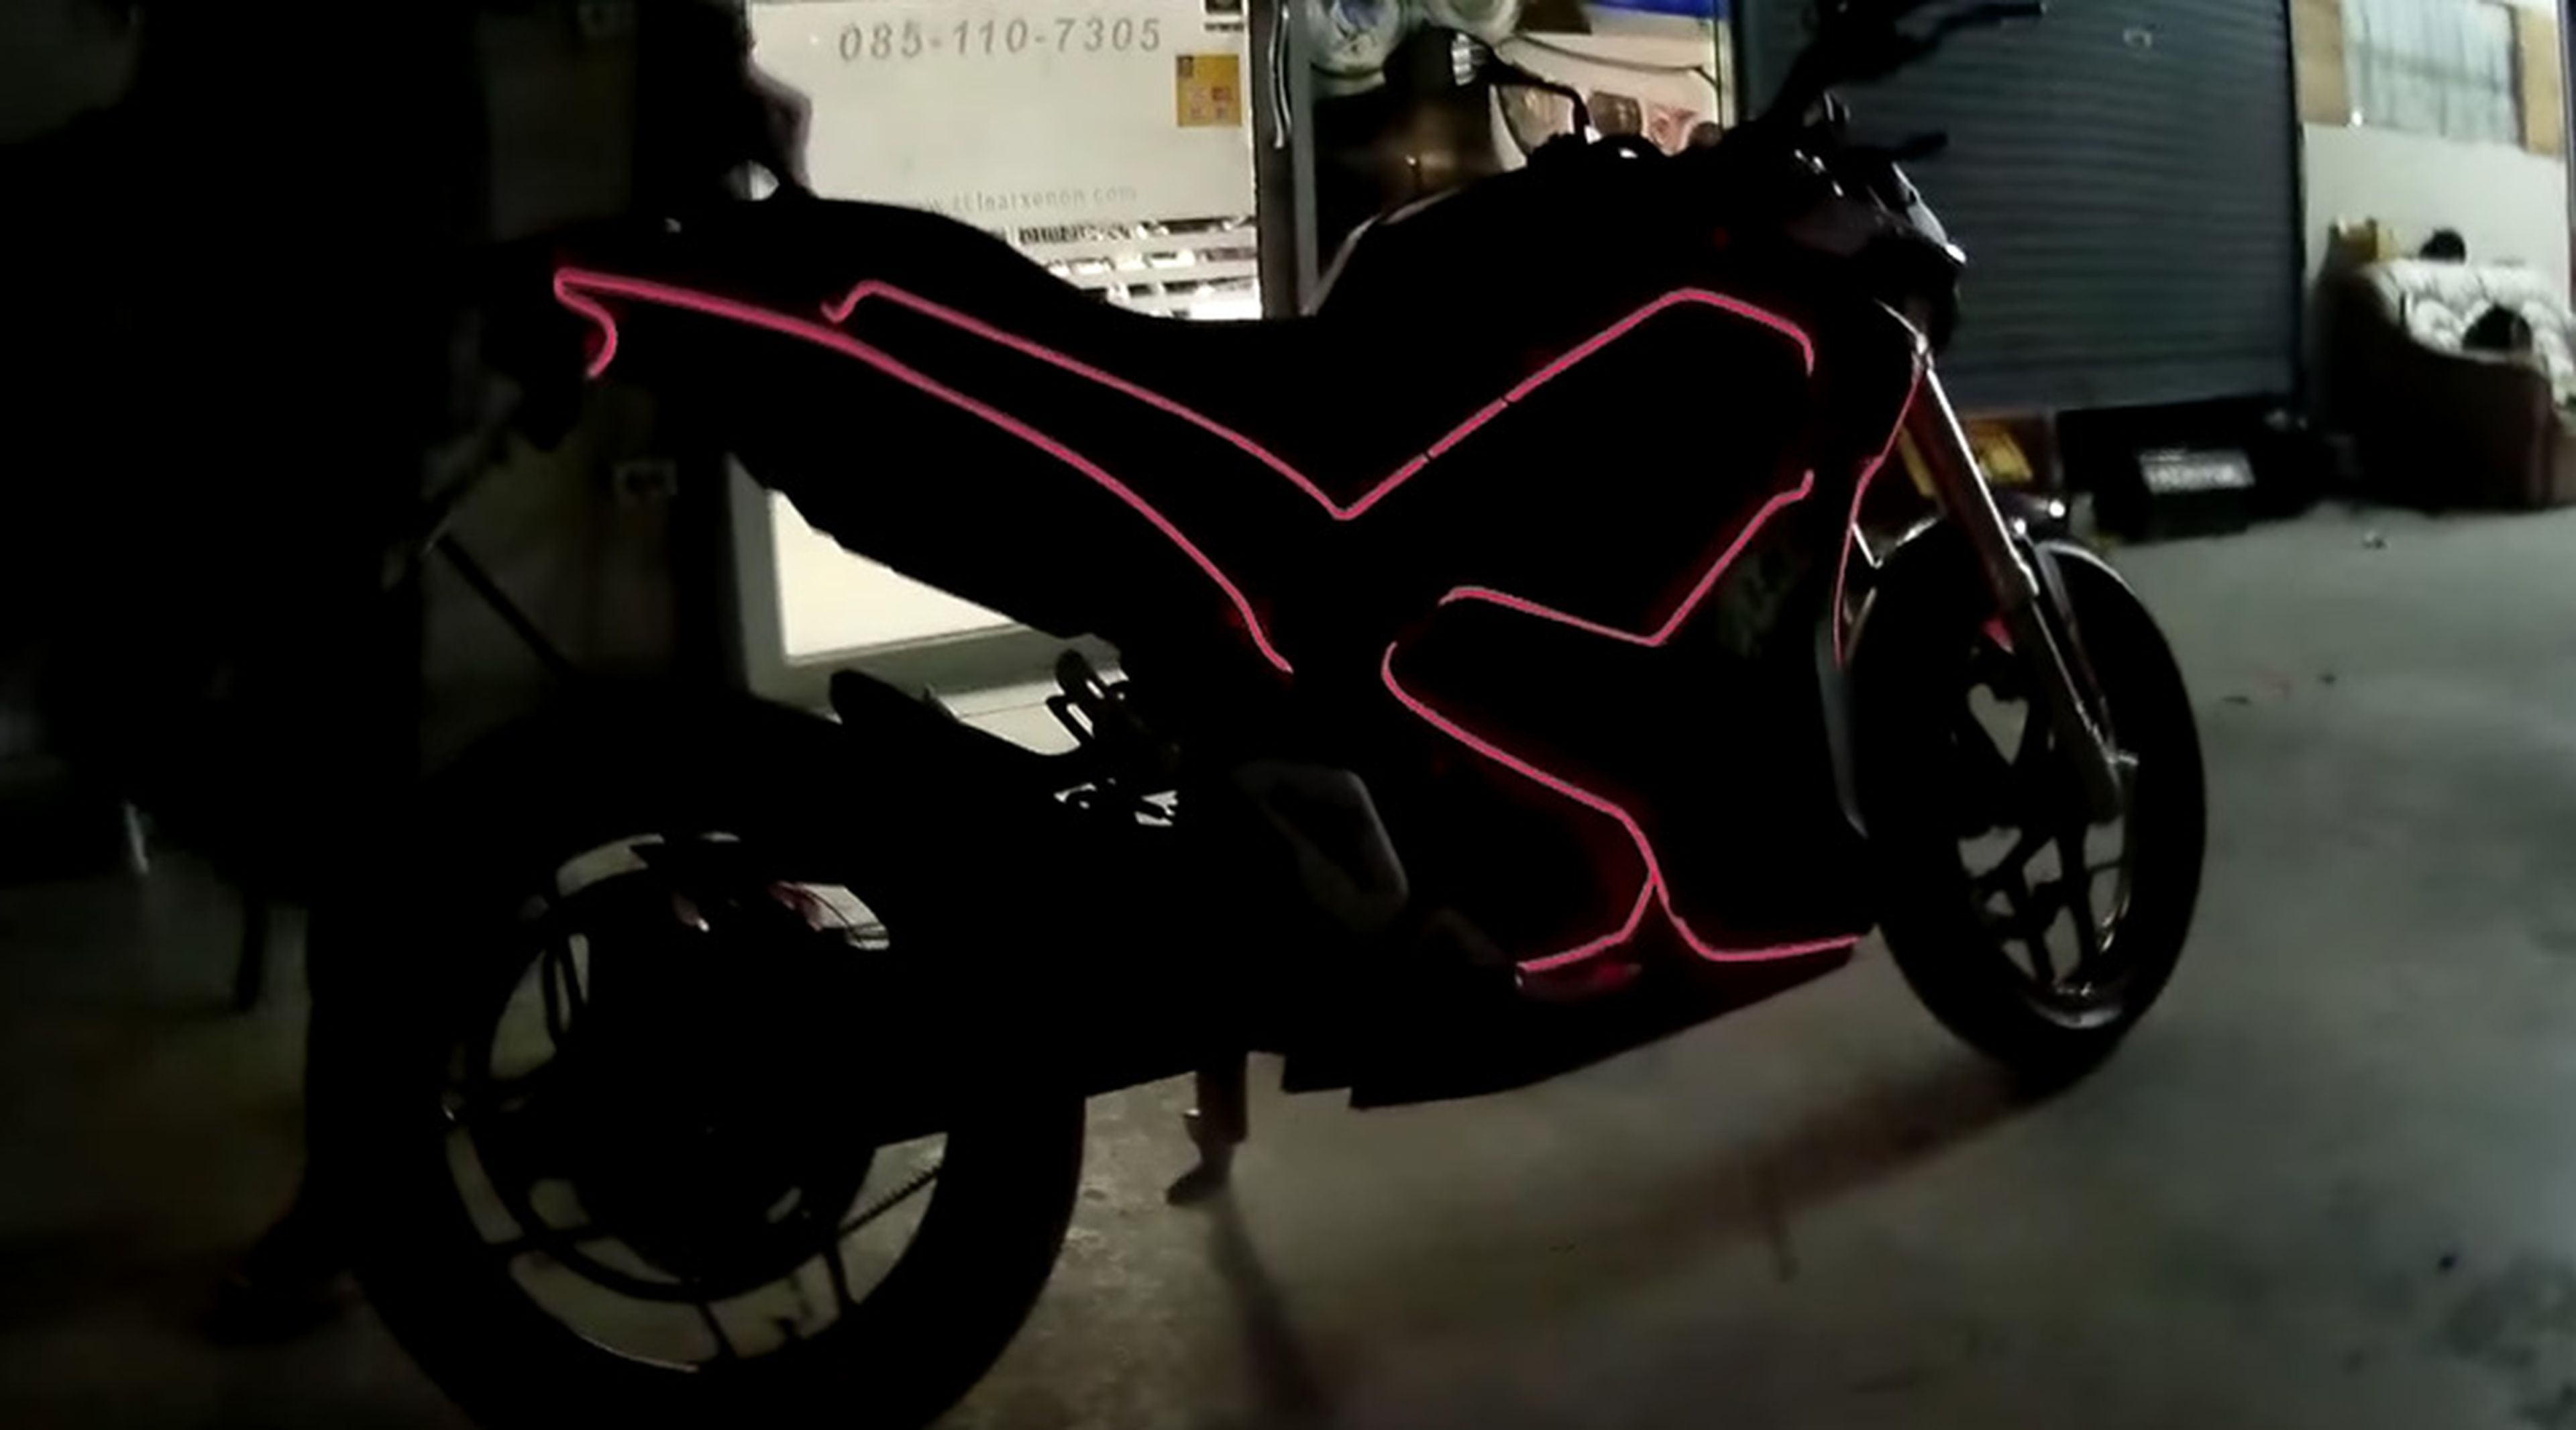 La moto eléctrica que parece sacada de la película Tron